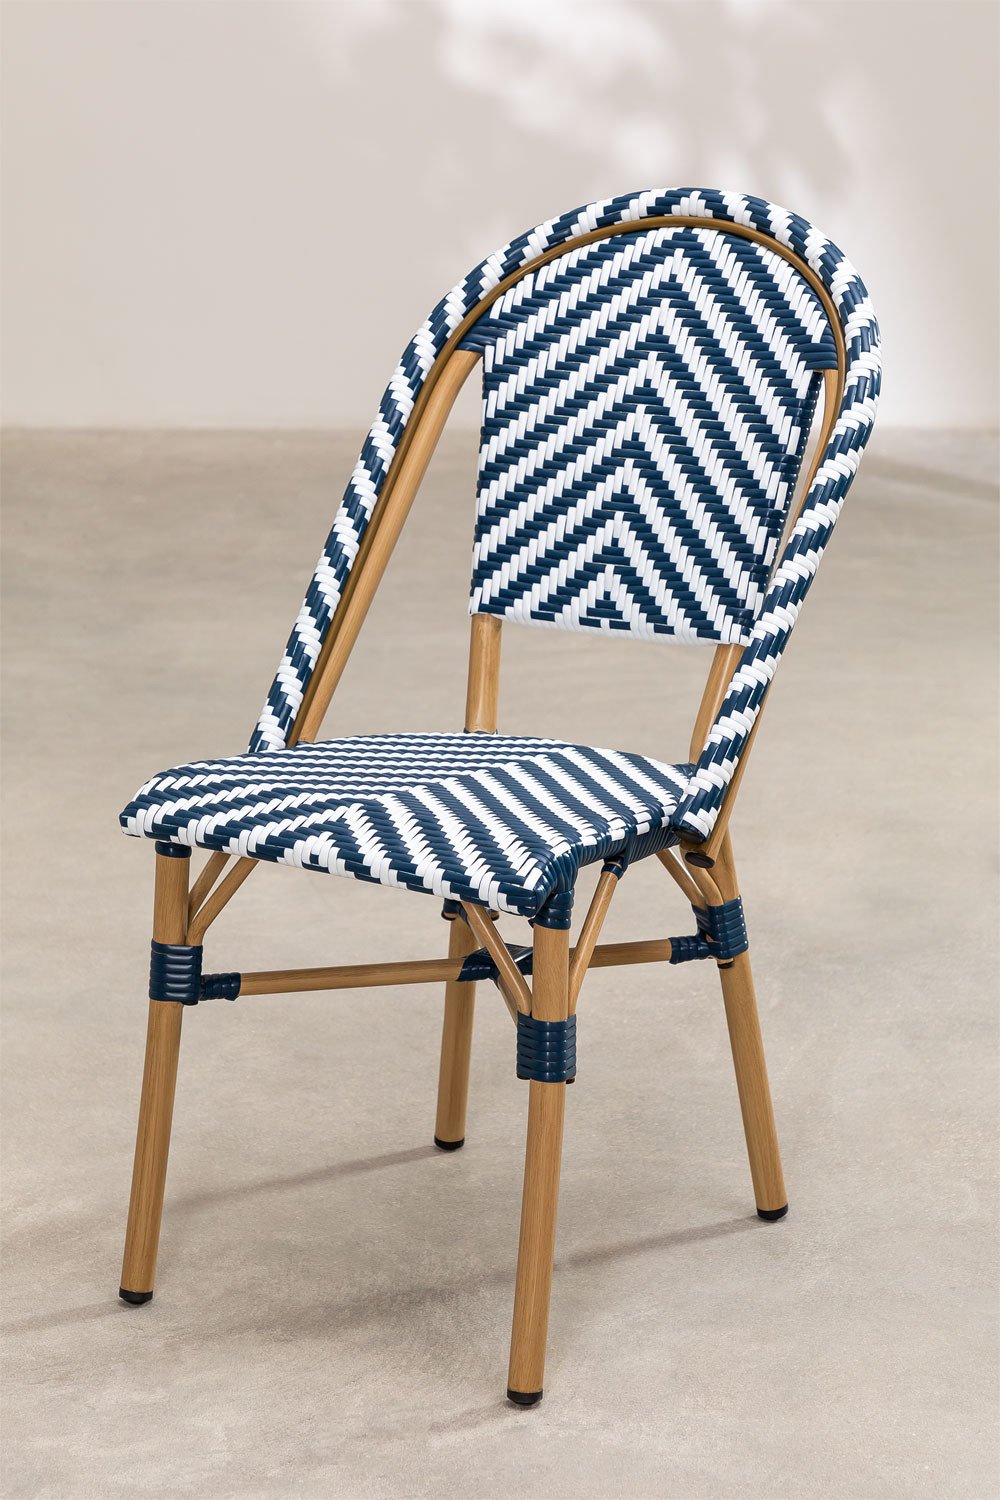 Ogrodowe Krzeslo z Syntetycznej Wikliny Kalian, obrazek w galerii 1